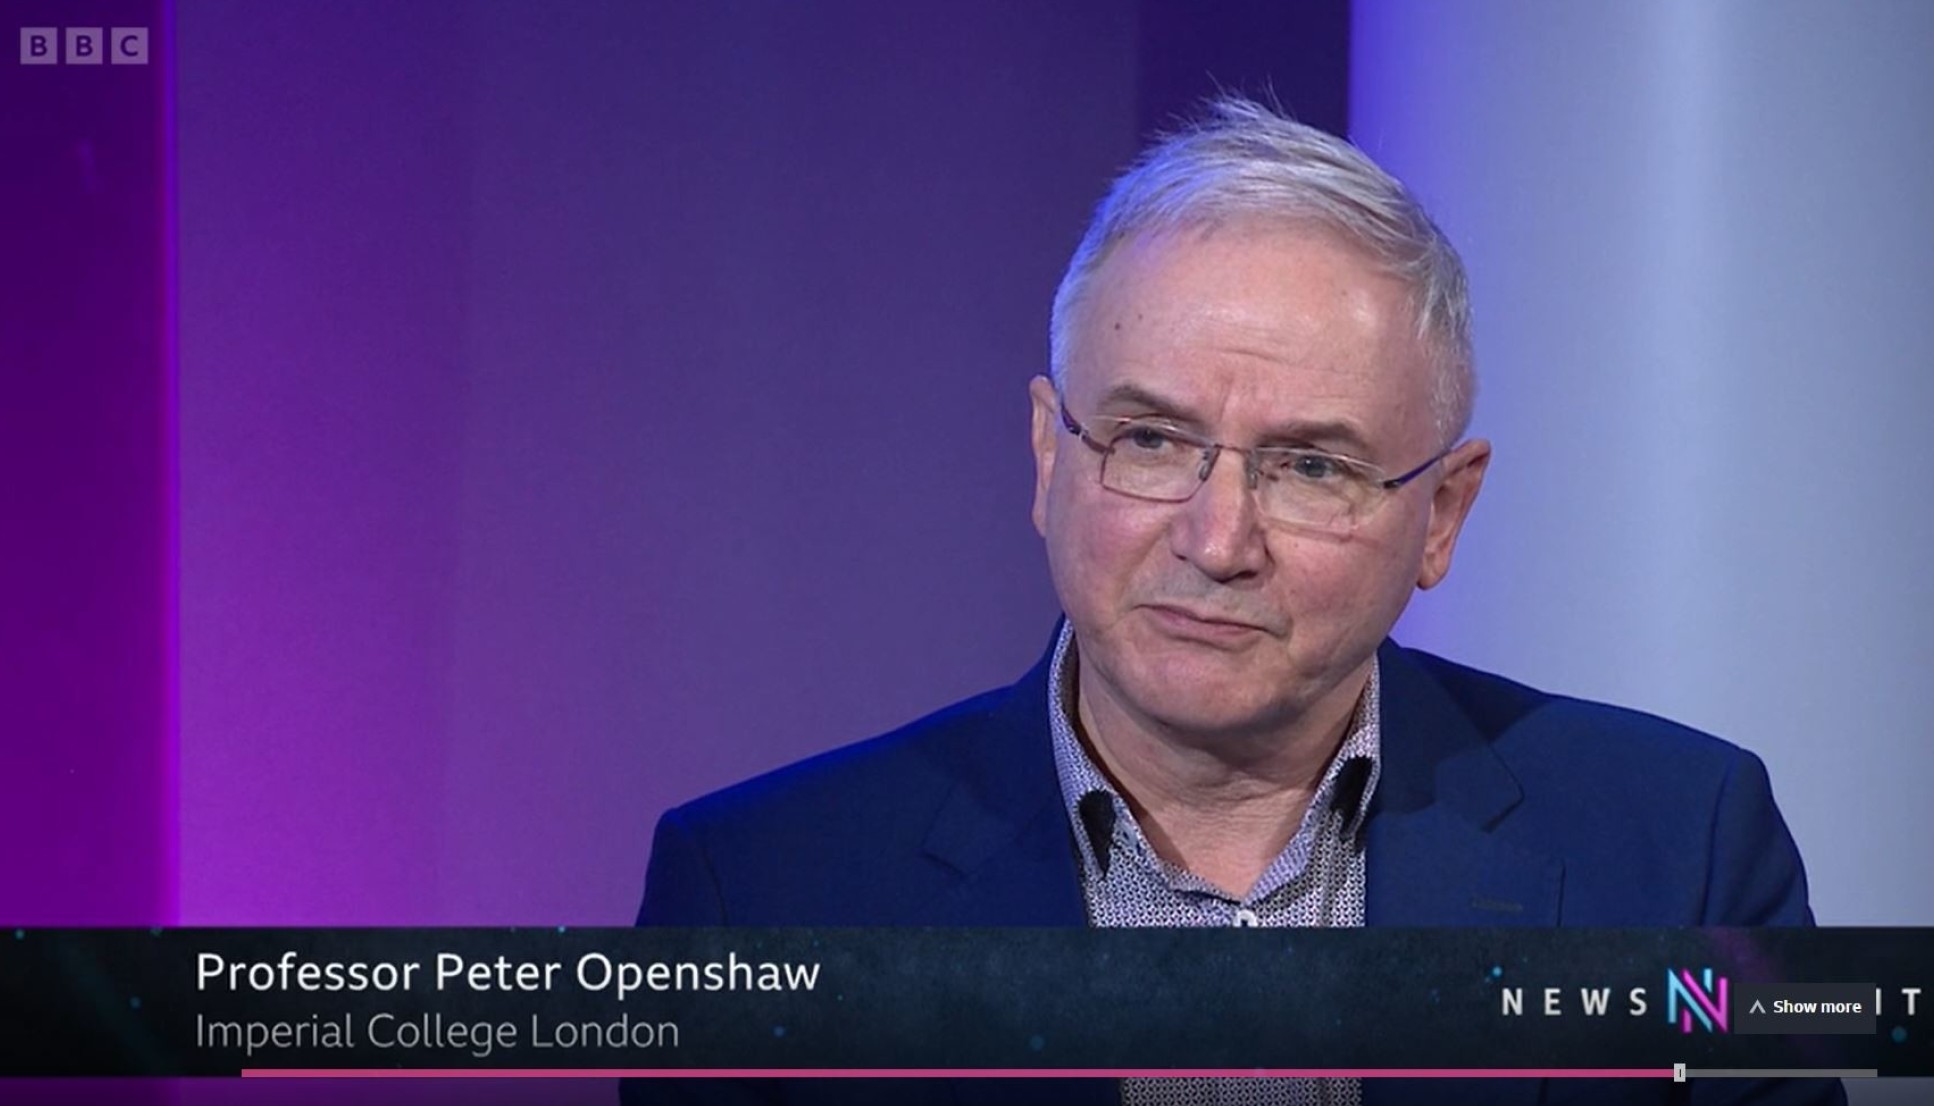 Professor Peter Openshaw